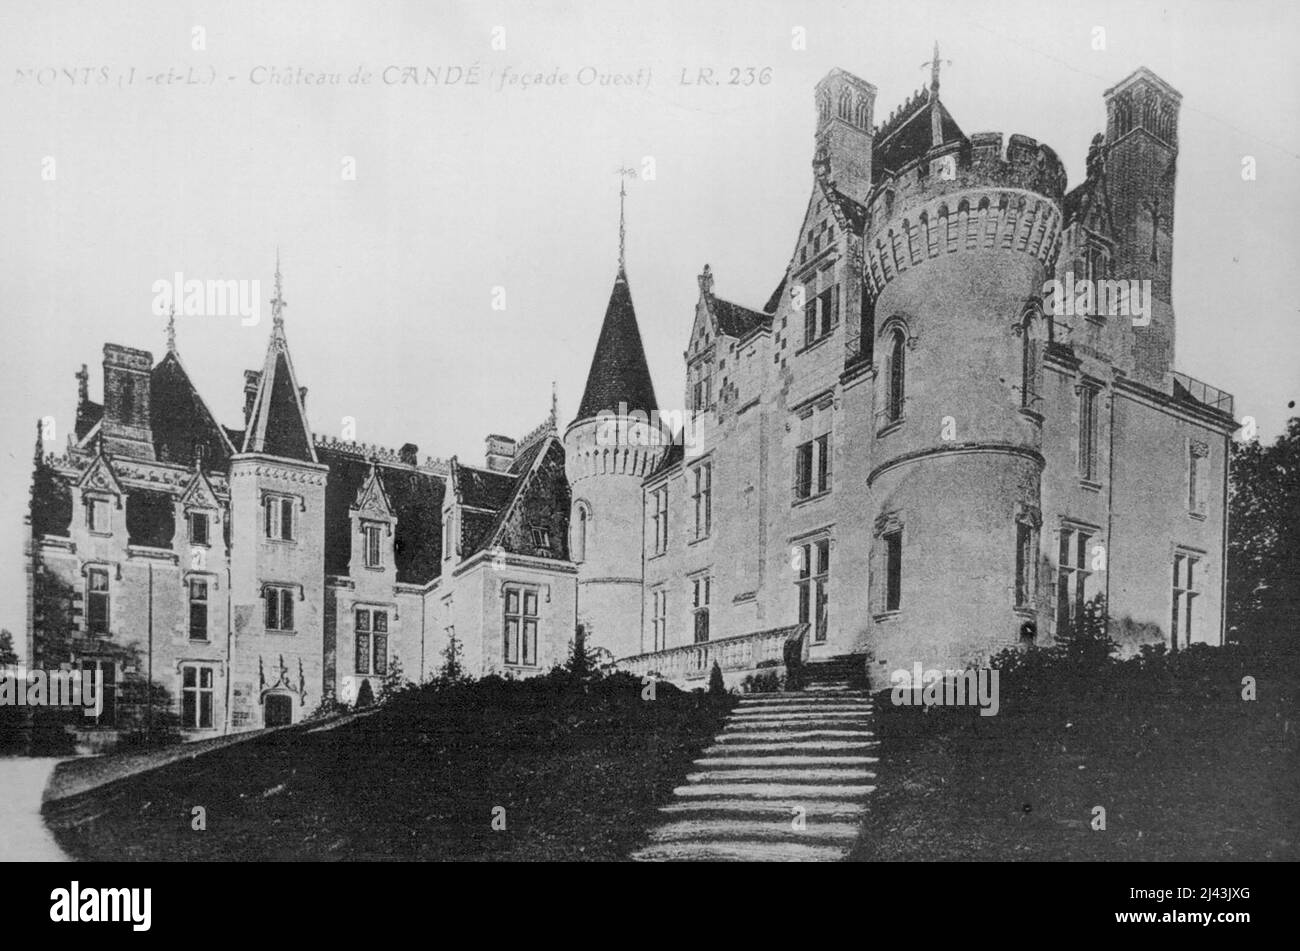 Chateau francese dove Mrs Simpson si trova nella parte ovest del Chateau De Cande a Blois, vicino a Tours, Francia. Di proprietà del signor e della signora Charles e Bedaux, ora è la casa della signora Ernest Simpson. Aprile 27, 1937. (Foto della stampante associata). Foto Stock